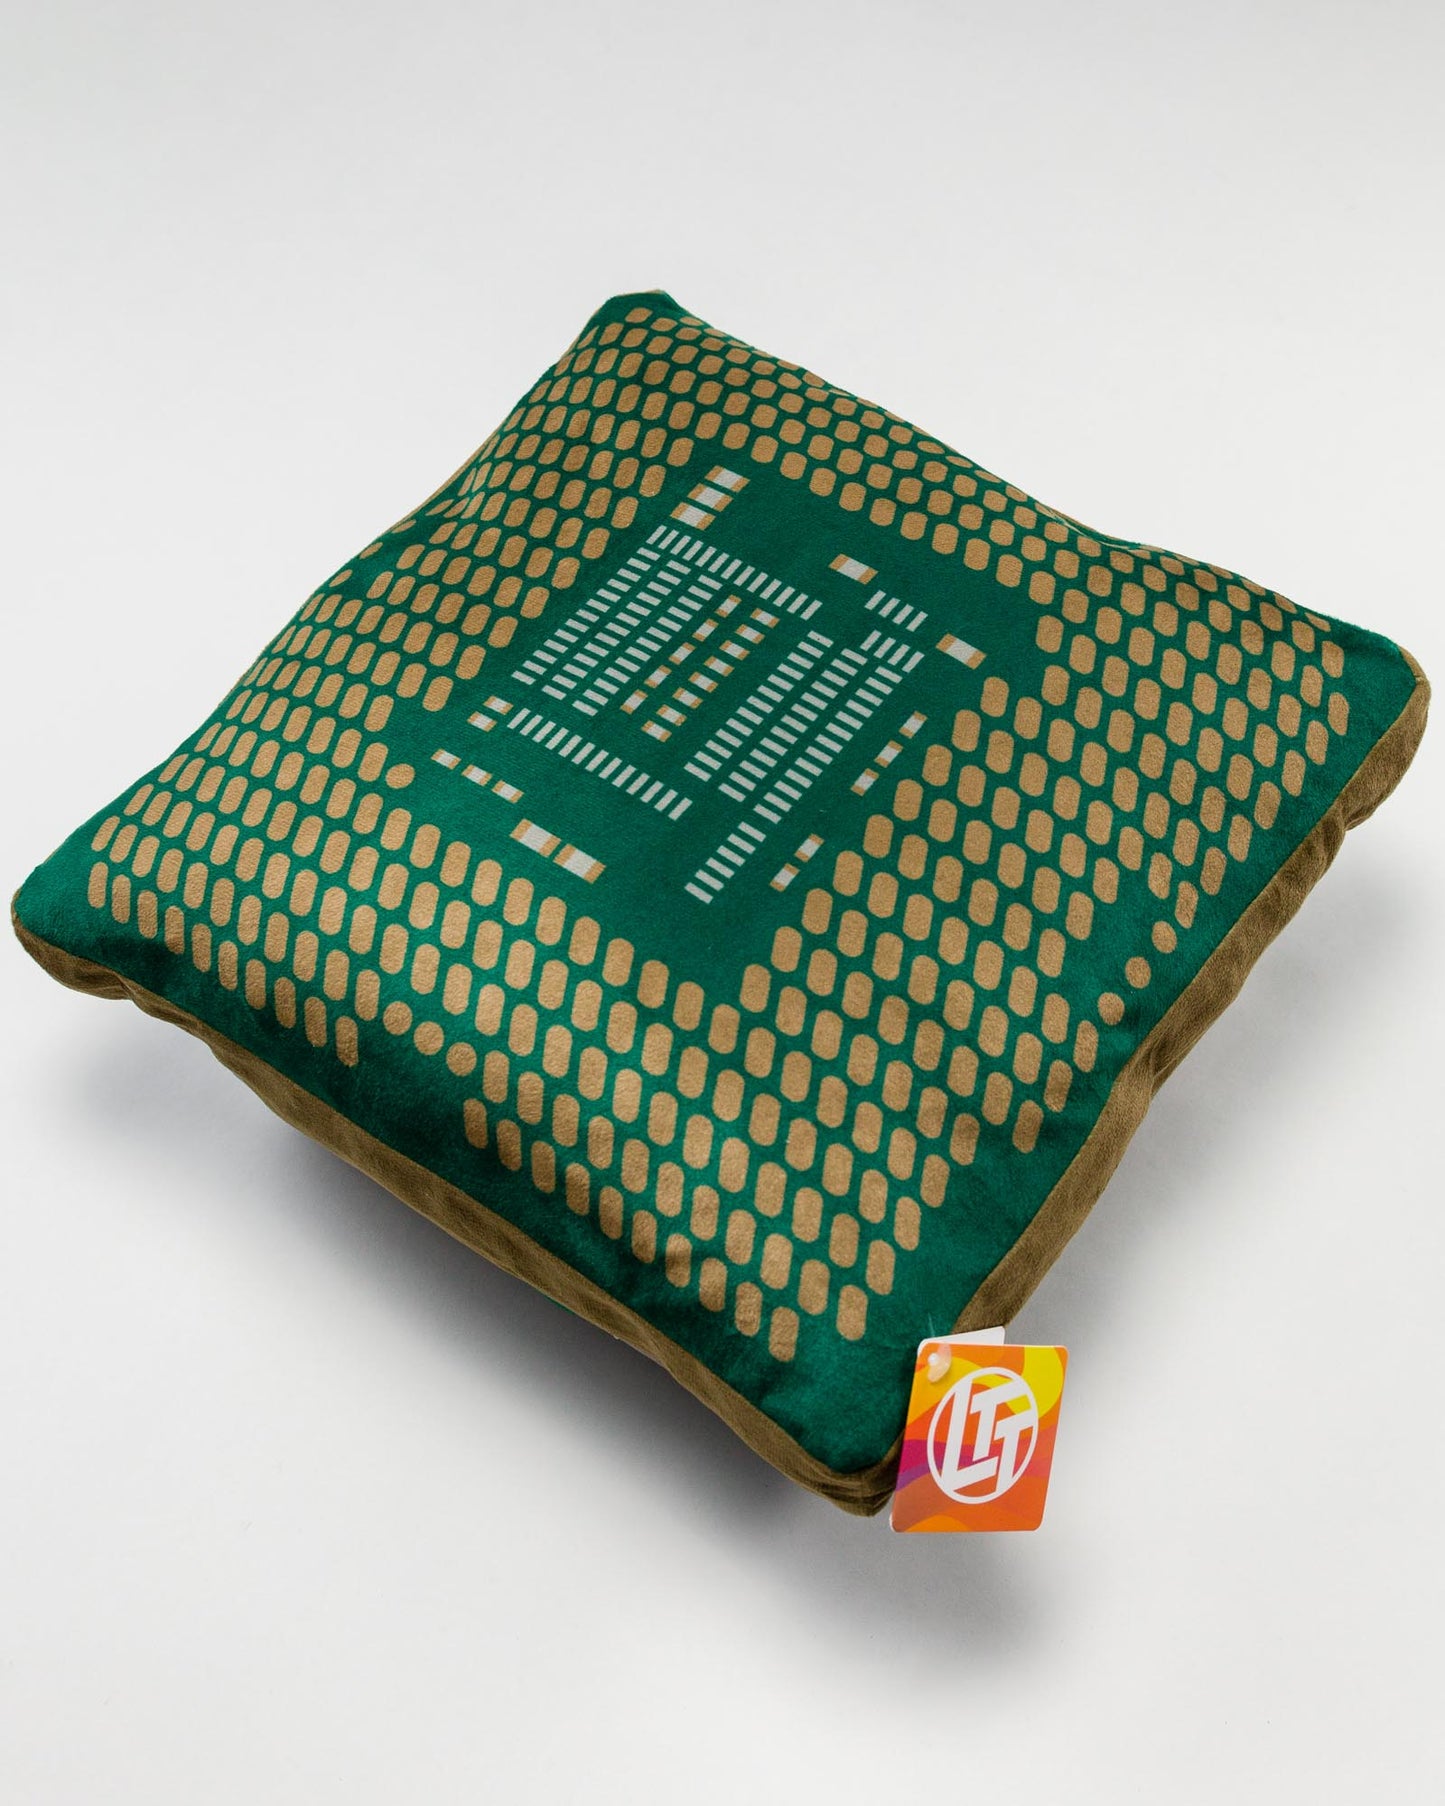 CPU Pillow